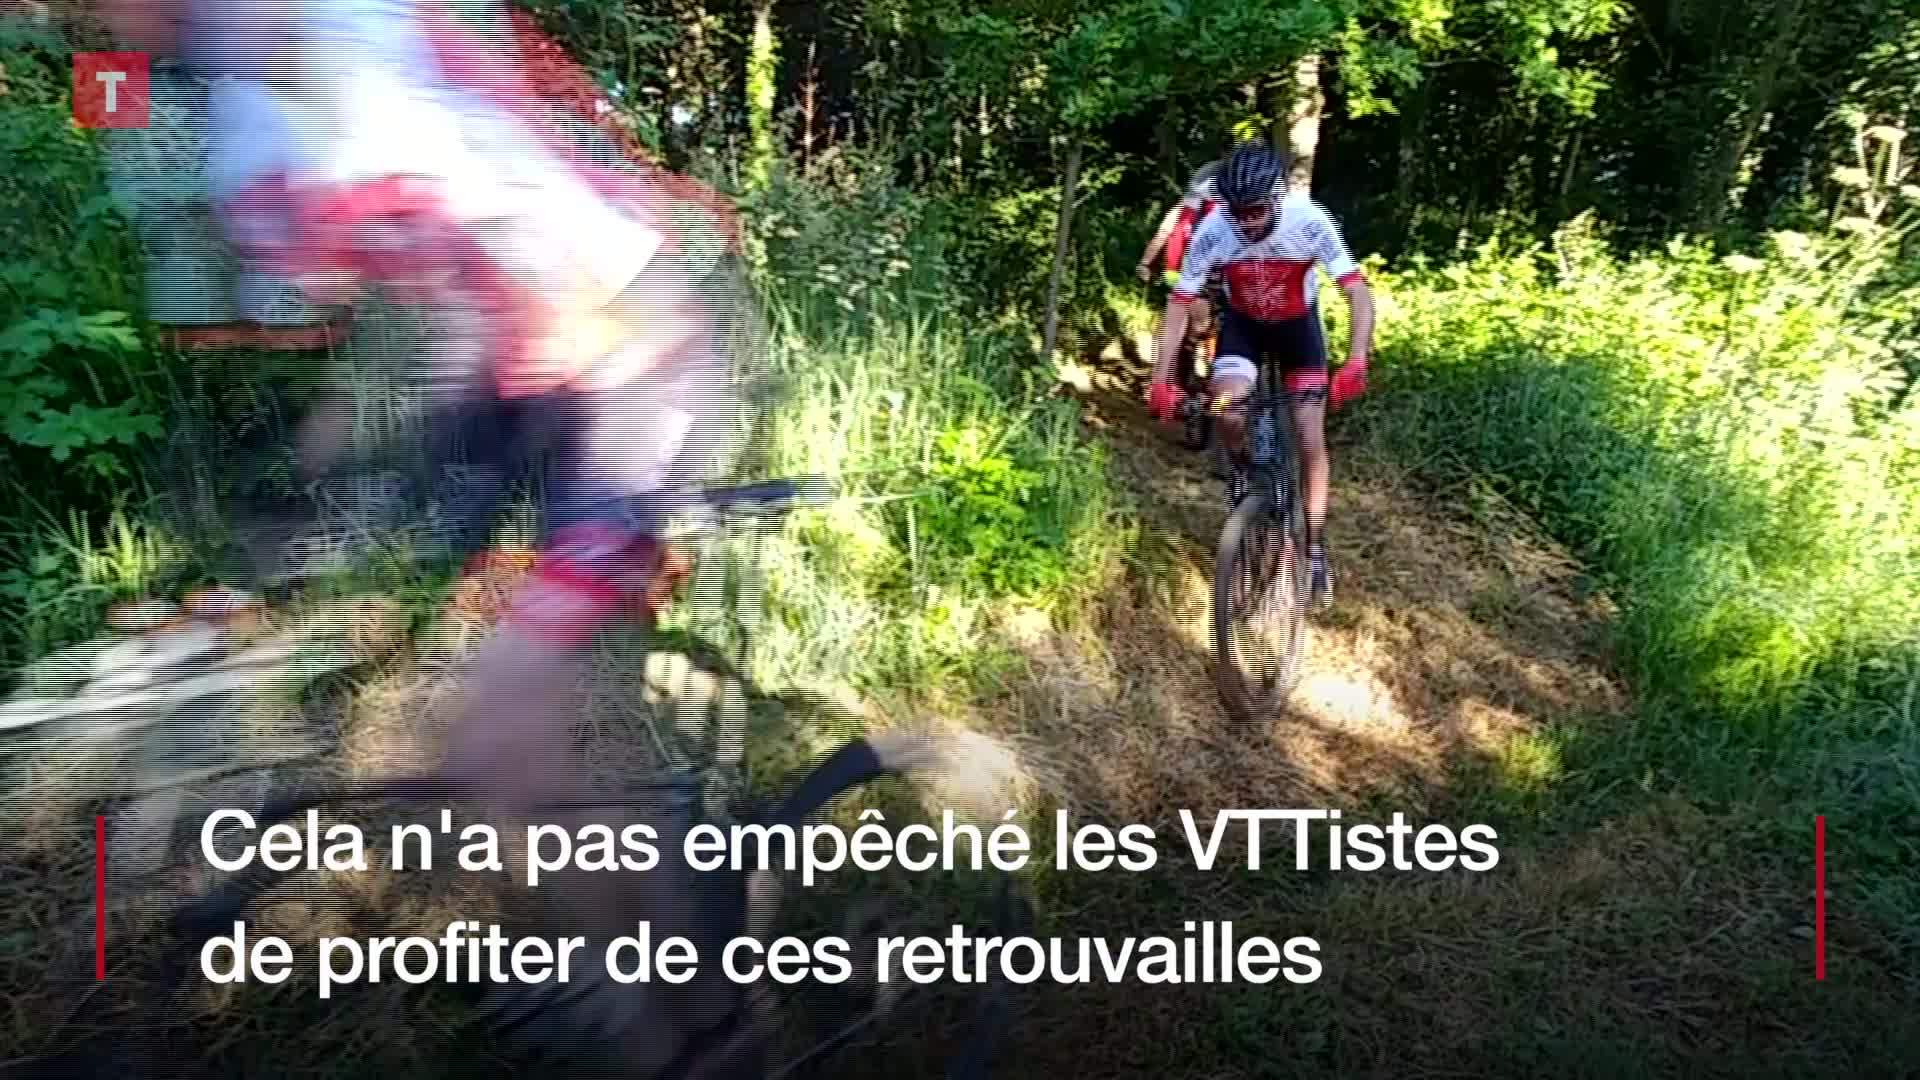 La reprise du VTT en Bretagne (Le Télégramme)